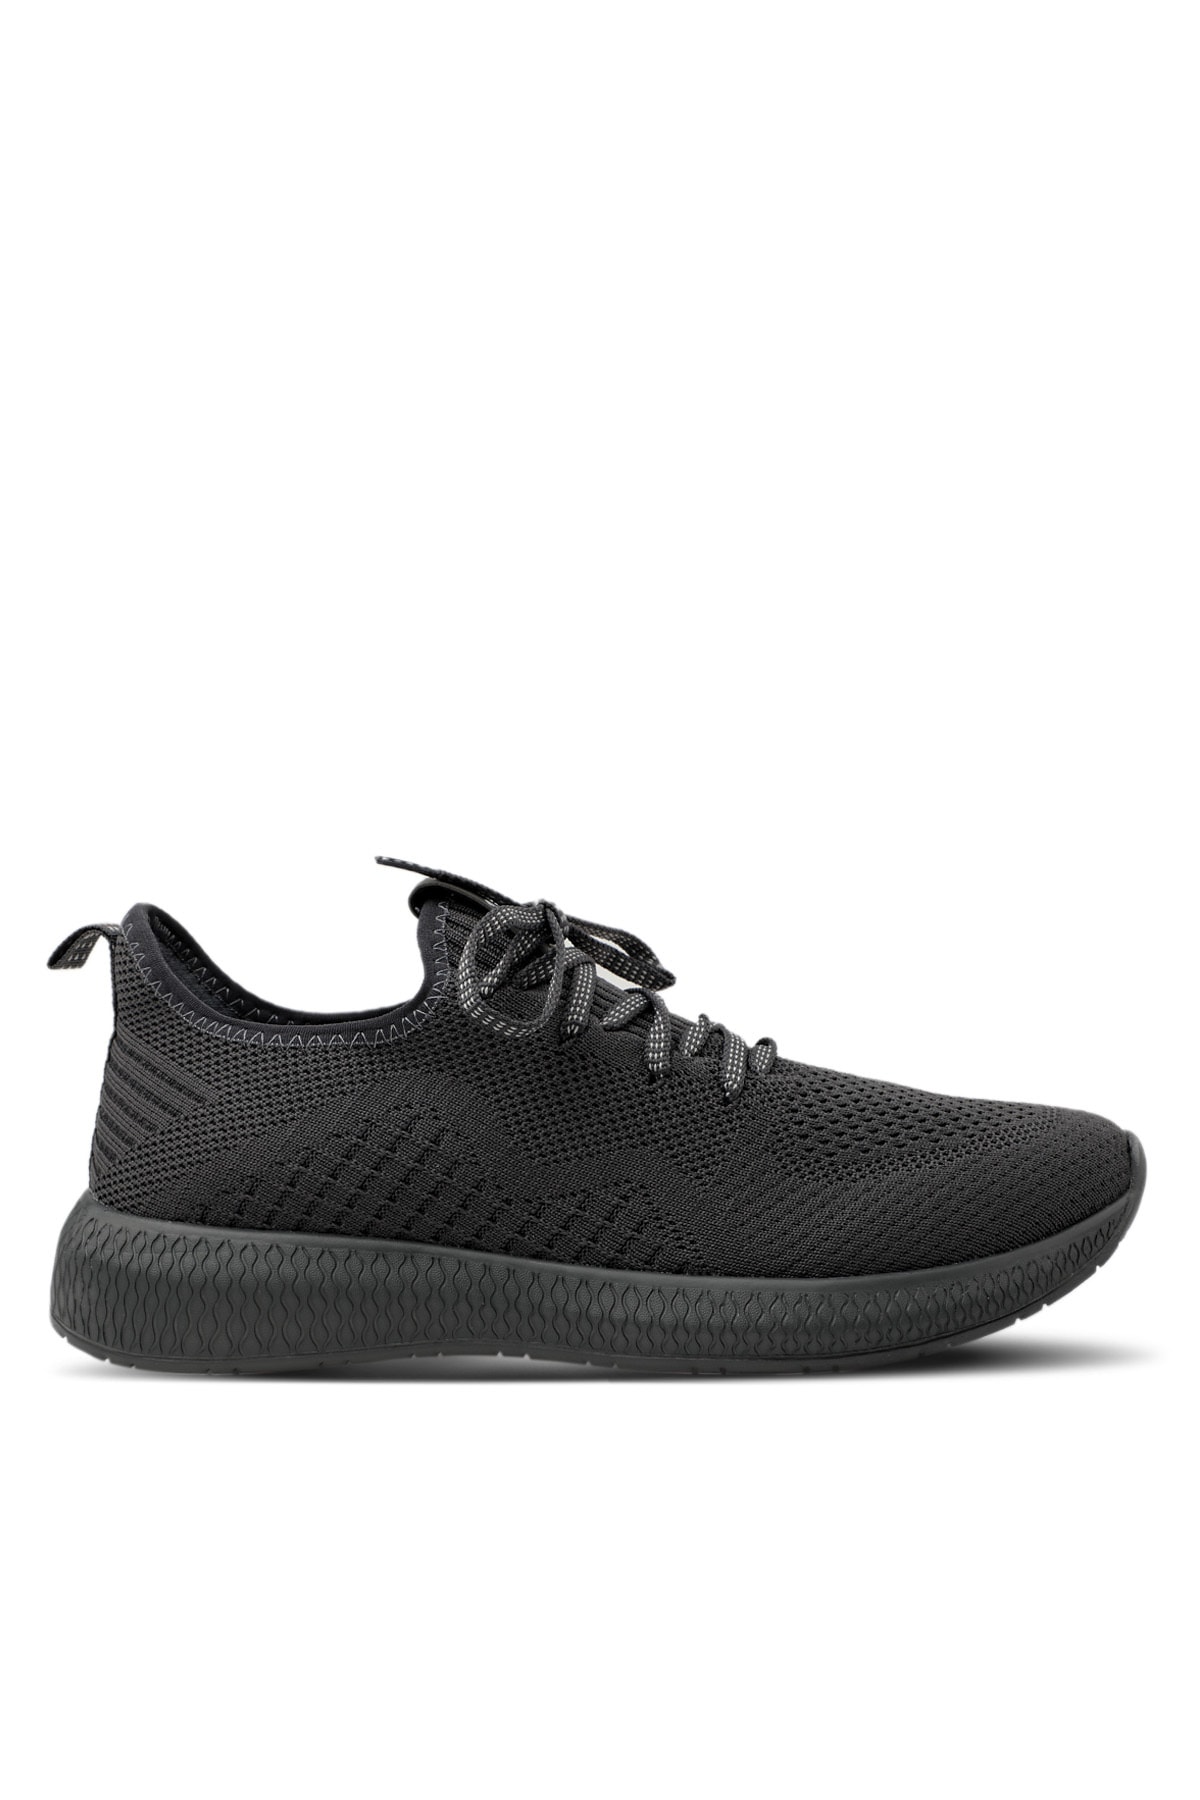 Slazenger Adria I Sneaker Men's Shoes Dark Gray